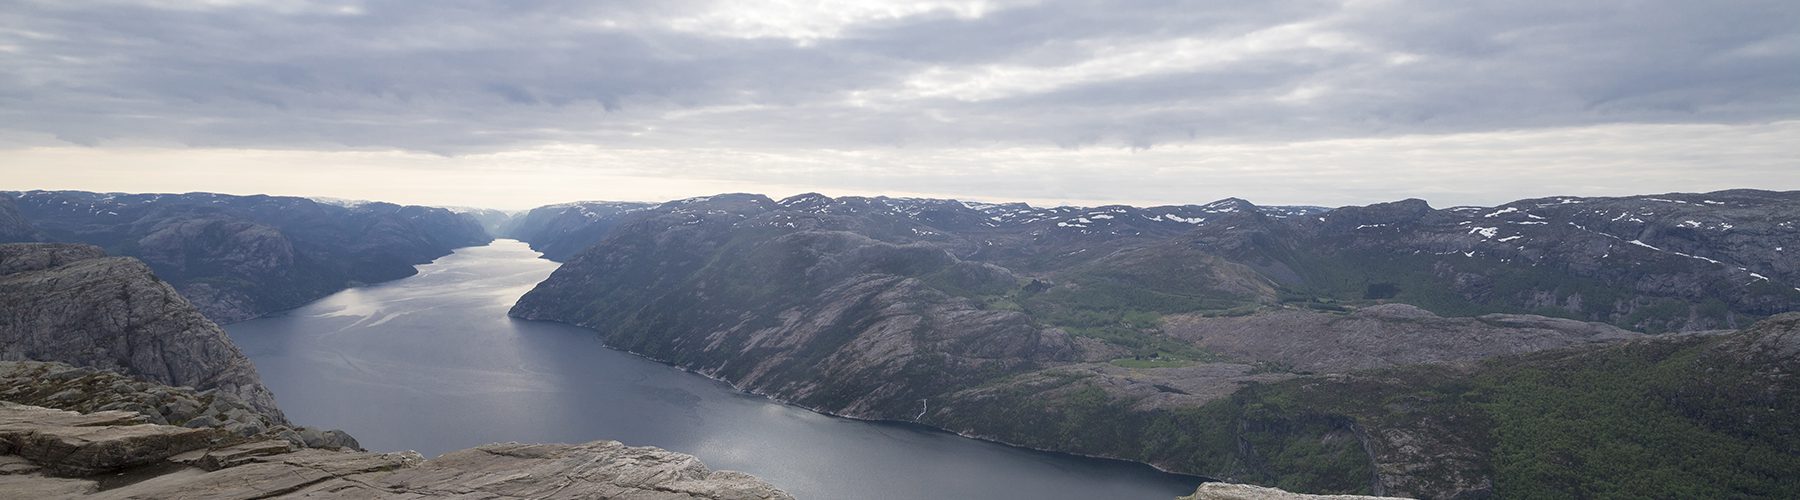 Ausblick vom Preikestolen auf den Lysefjord